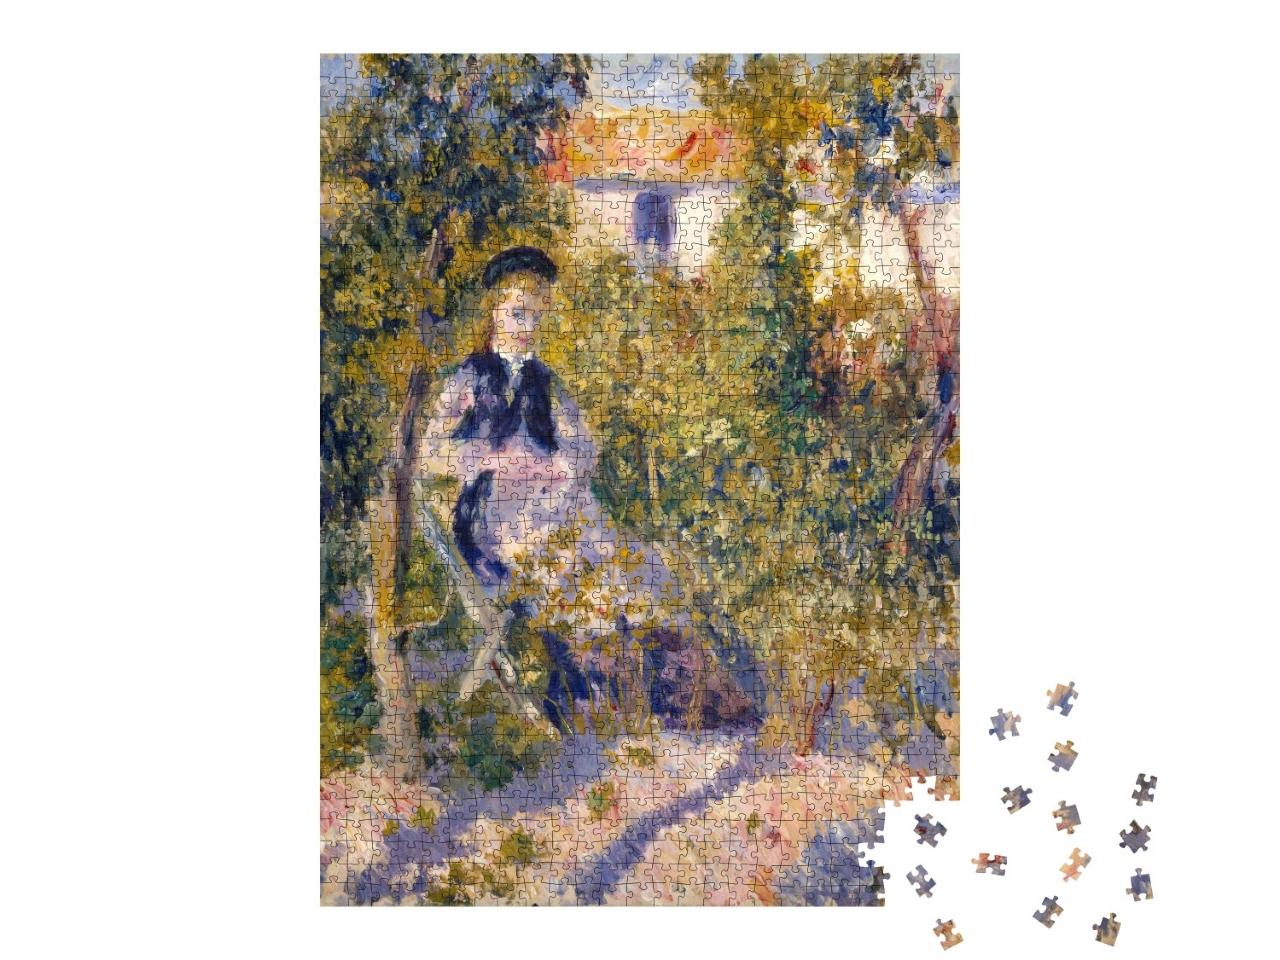 Puzzle 1000 Teile „Auguste Renoir - Nini im Garten“